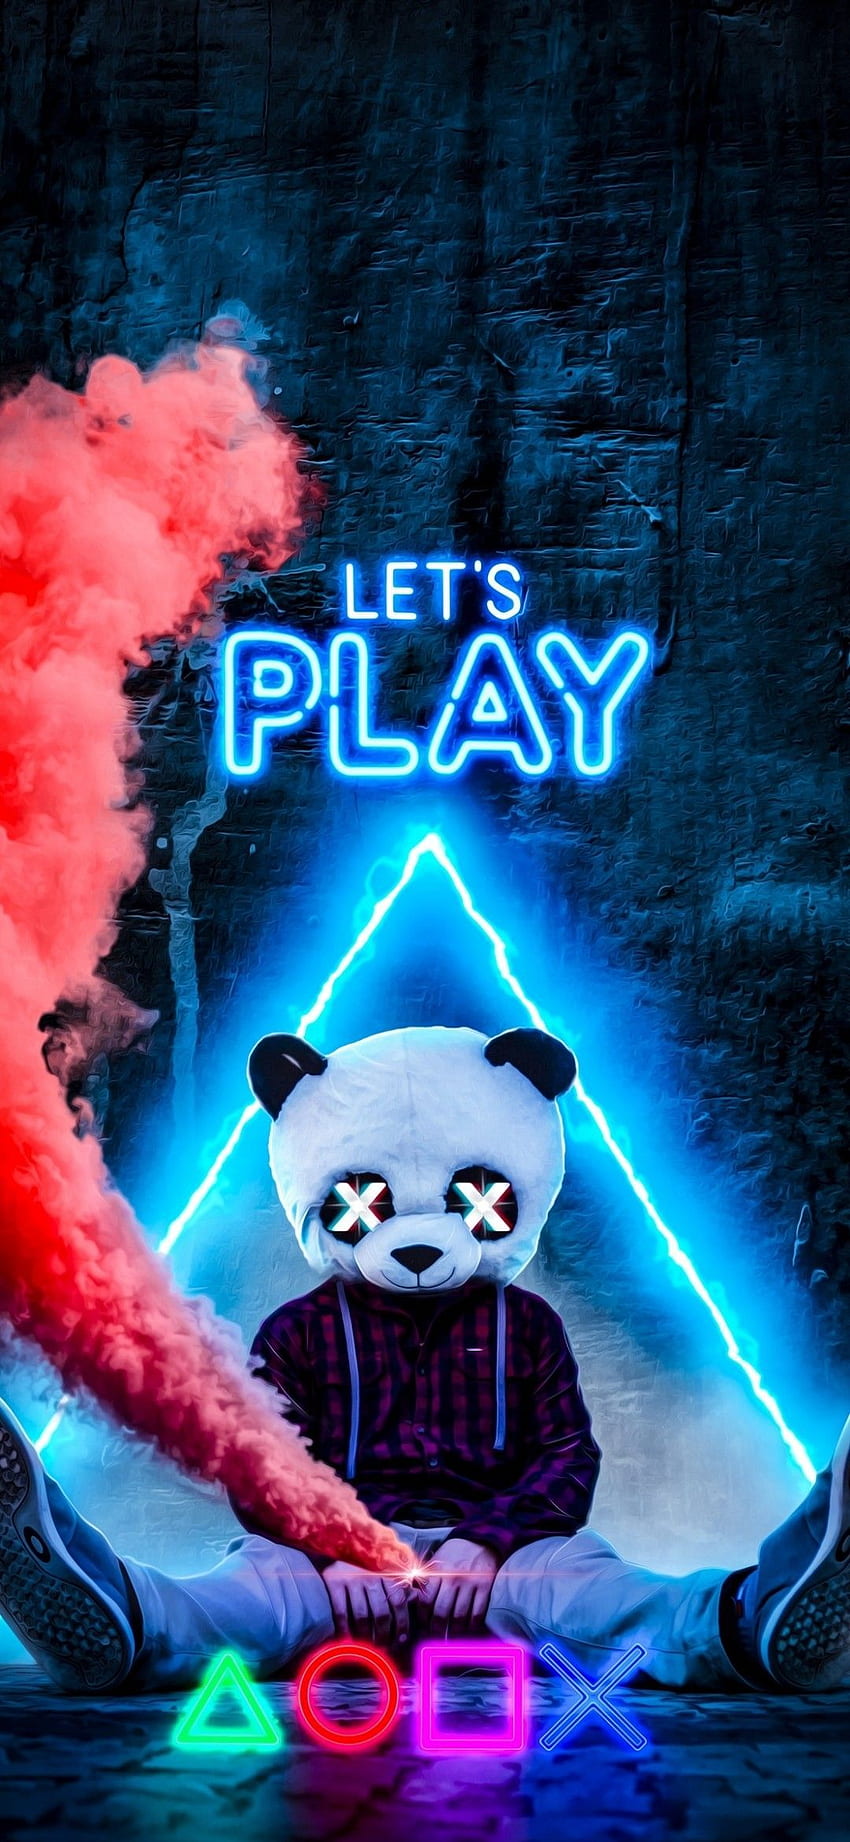 Let's Play Panda - (panda, maska, neon, dym, gracz, gra). Komiks ilustracyjny, postać ilustracyjna, plakat ilustracyjny, grafitti do gier Tapeta na telefon HD